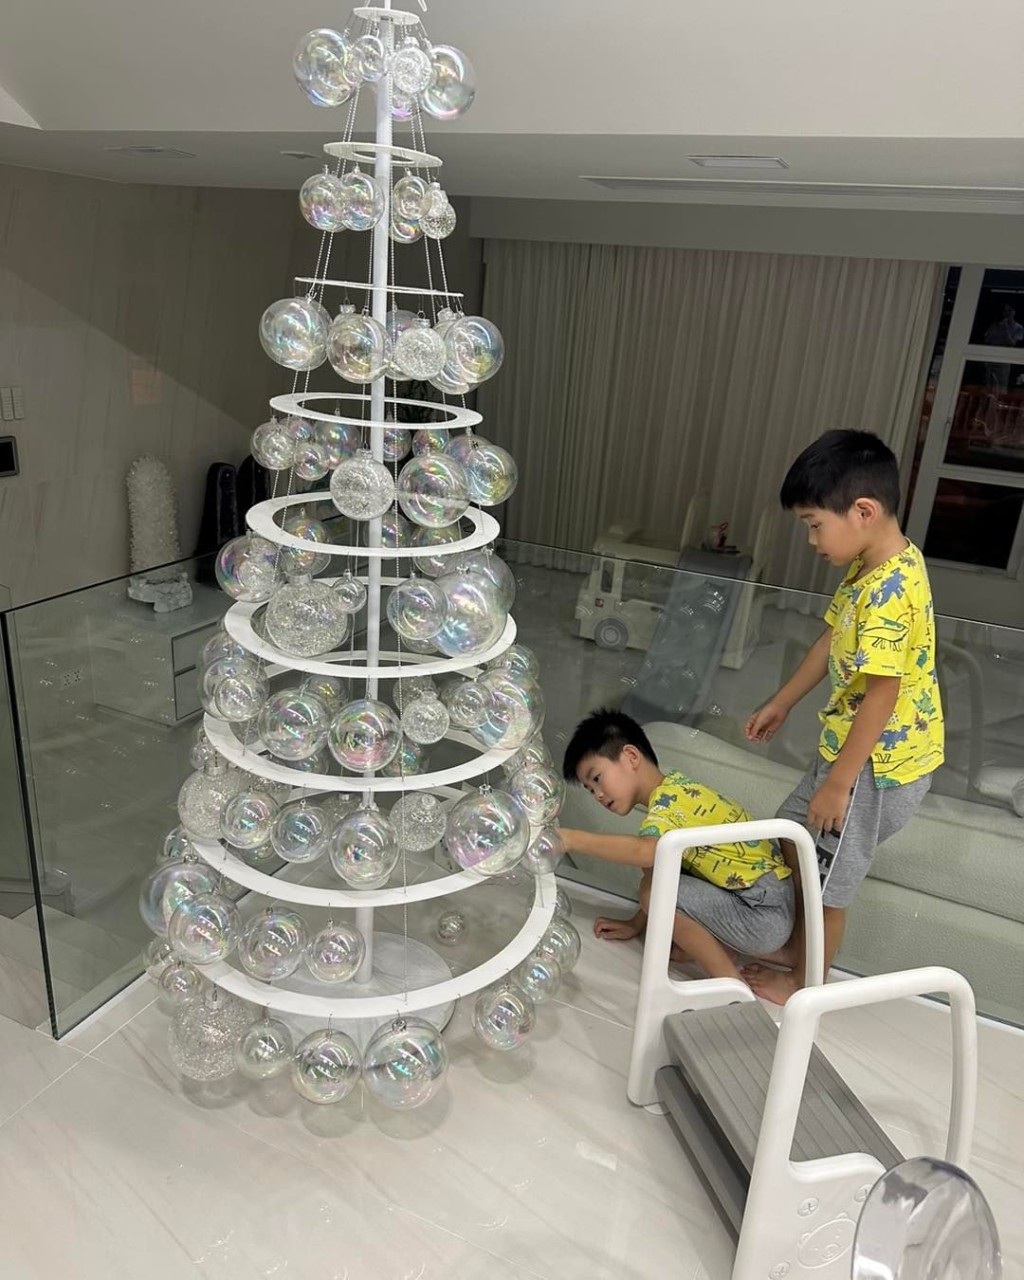 葉翠翠昨晚分享三個孩子在家中合力砌巨型聖誕樹。